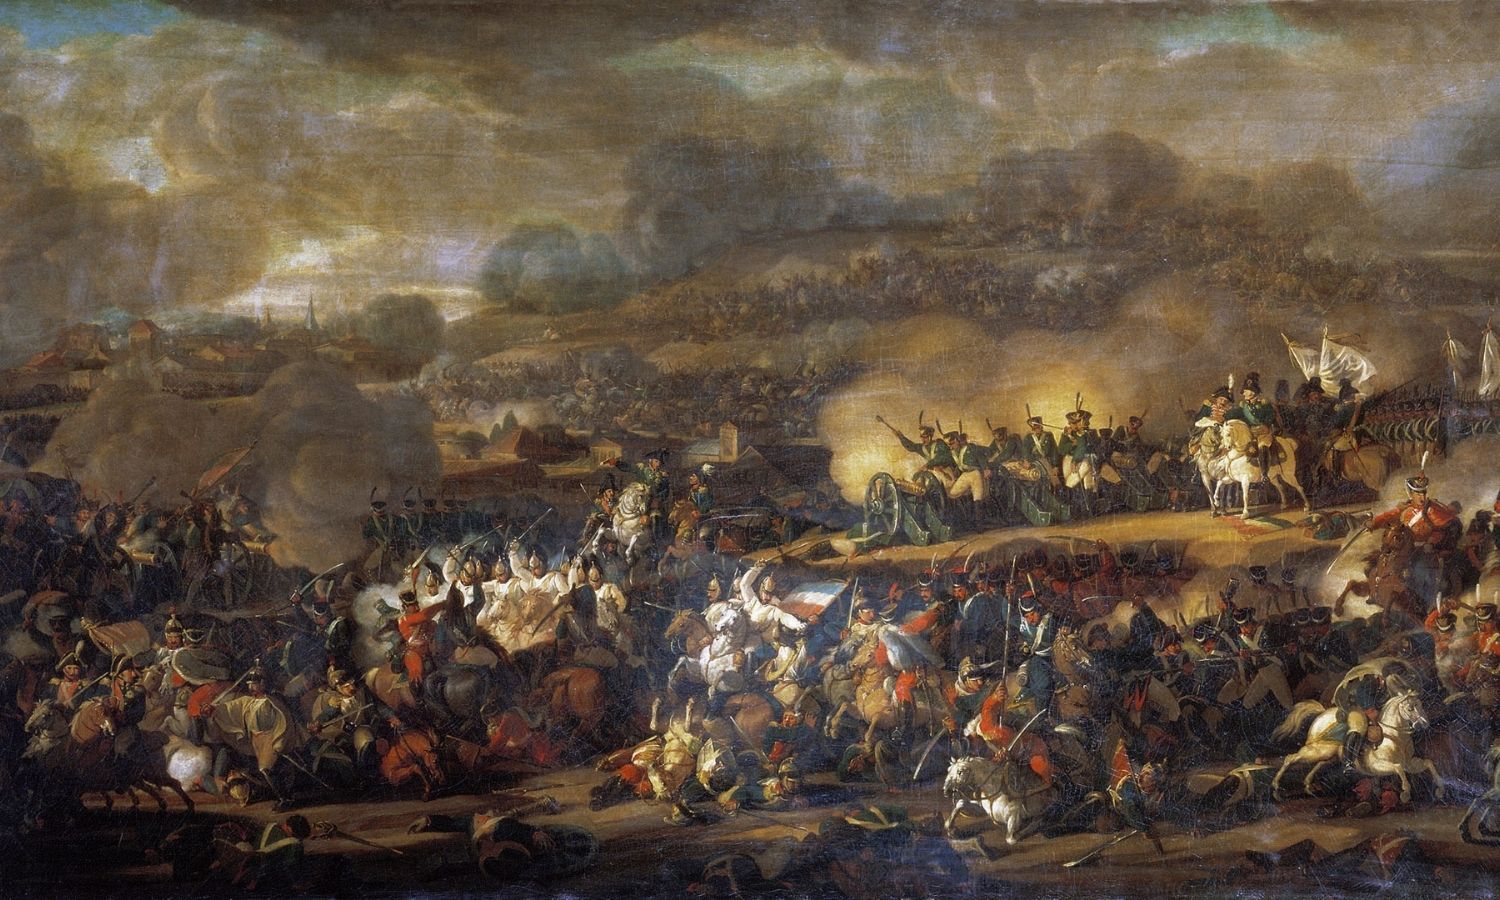 OTD in 1813: The Battle of Leipzig began.